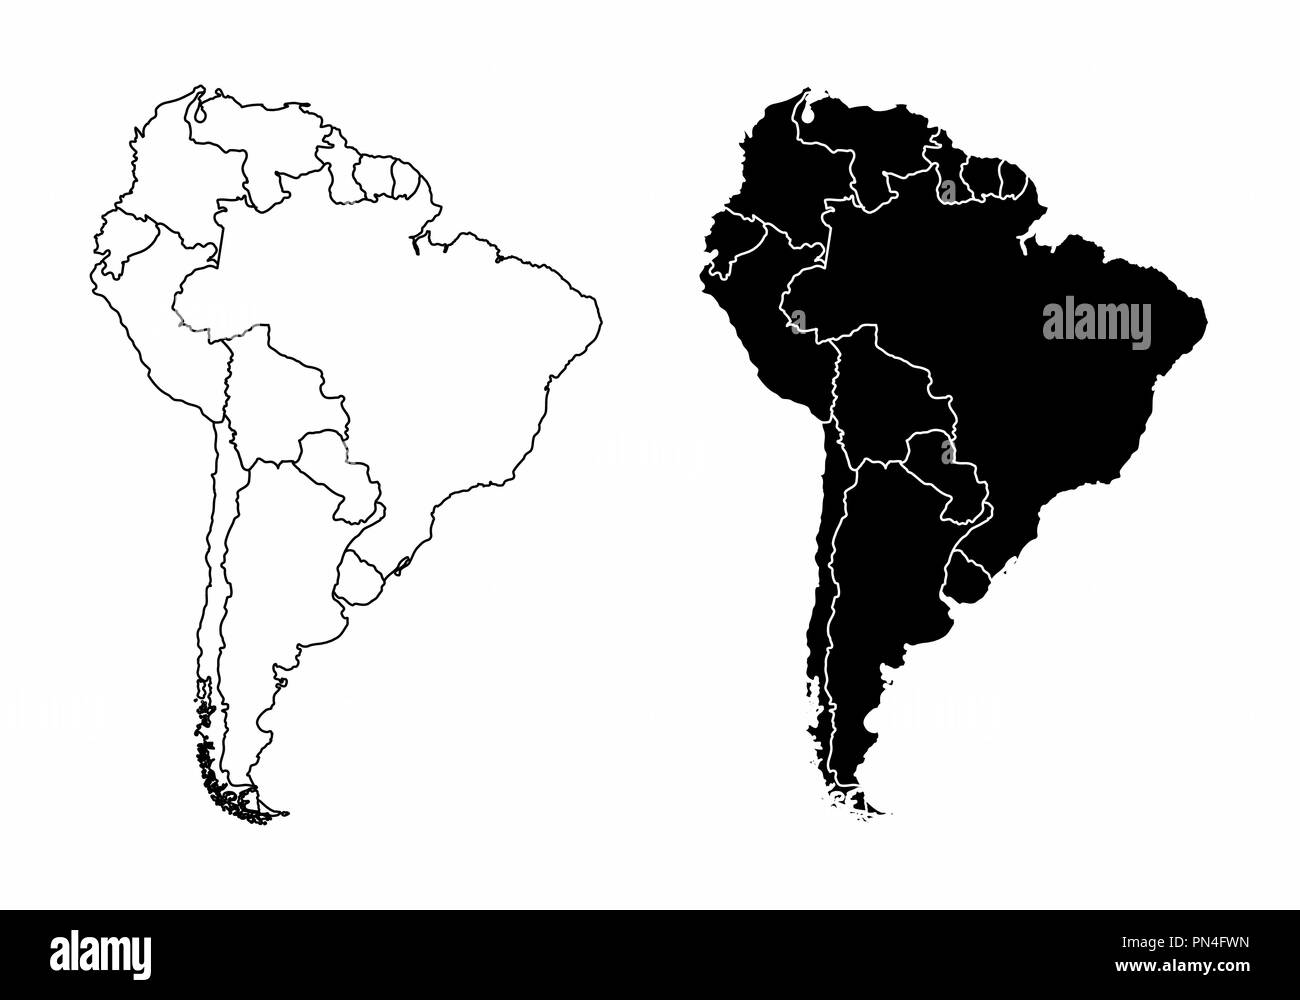 Vereinfachte Karten Der Sudamerika Mit Landern Grenzen Schwarze Und Weisse Umrisse Stock Vektorgrafik Alamy